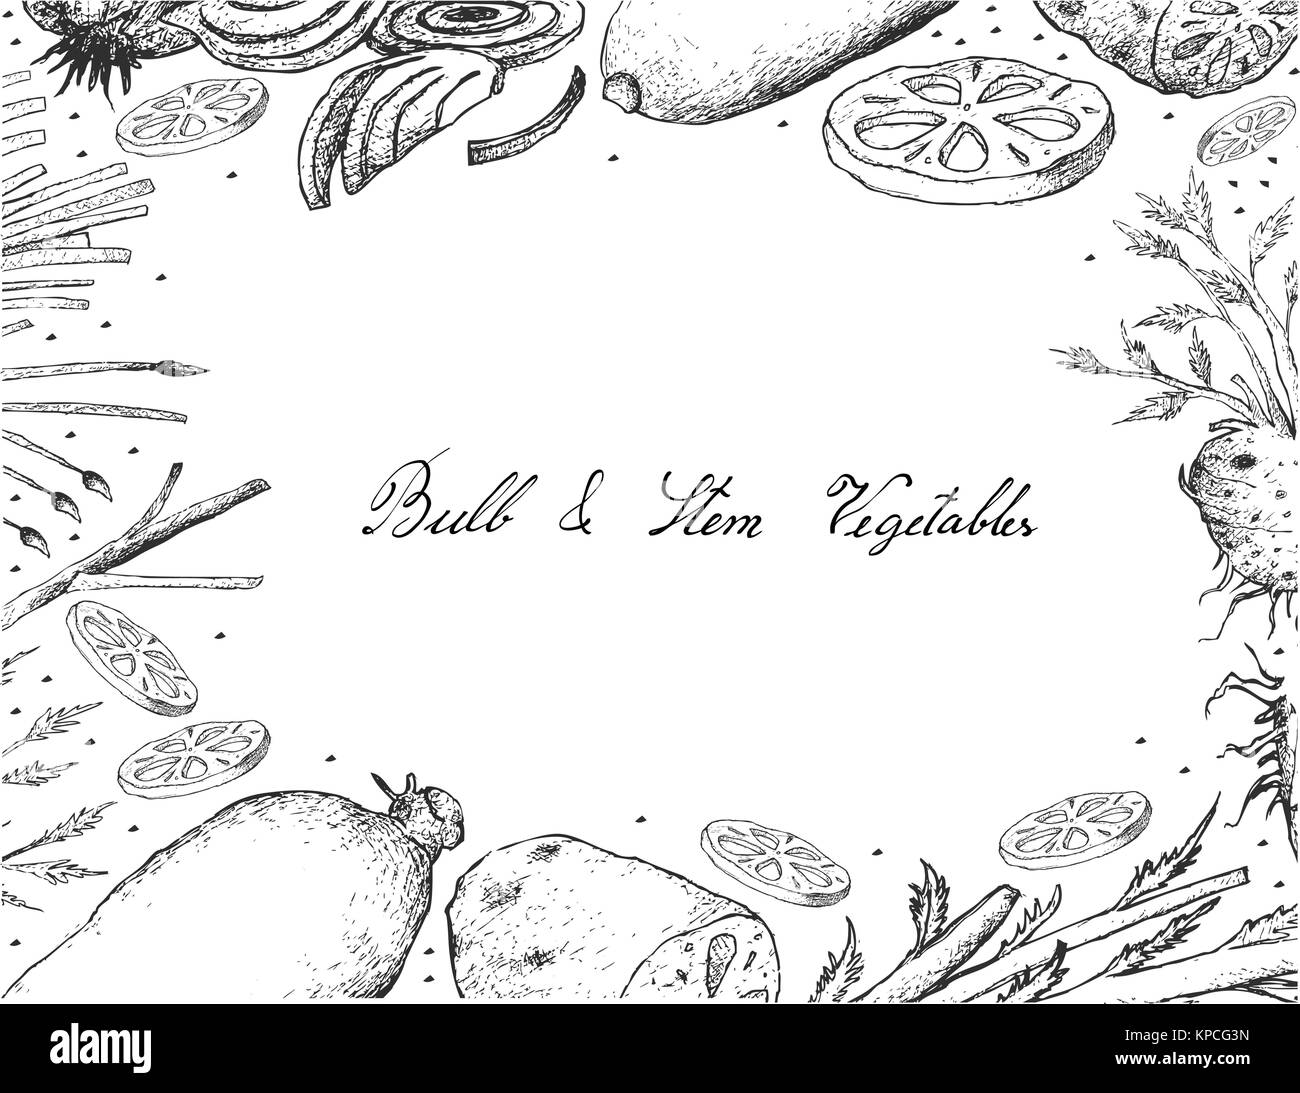 Gemüse- und Kräutergarten, Illustration von Hand gezeichnete Skizze köstliche frische Birne und Stammzellen Gemüse isoliert auf weißem Hintergrund. Stock Vektor